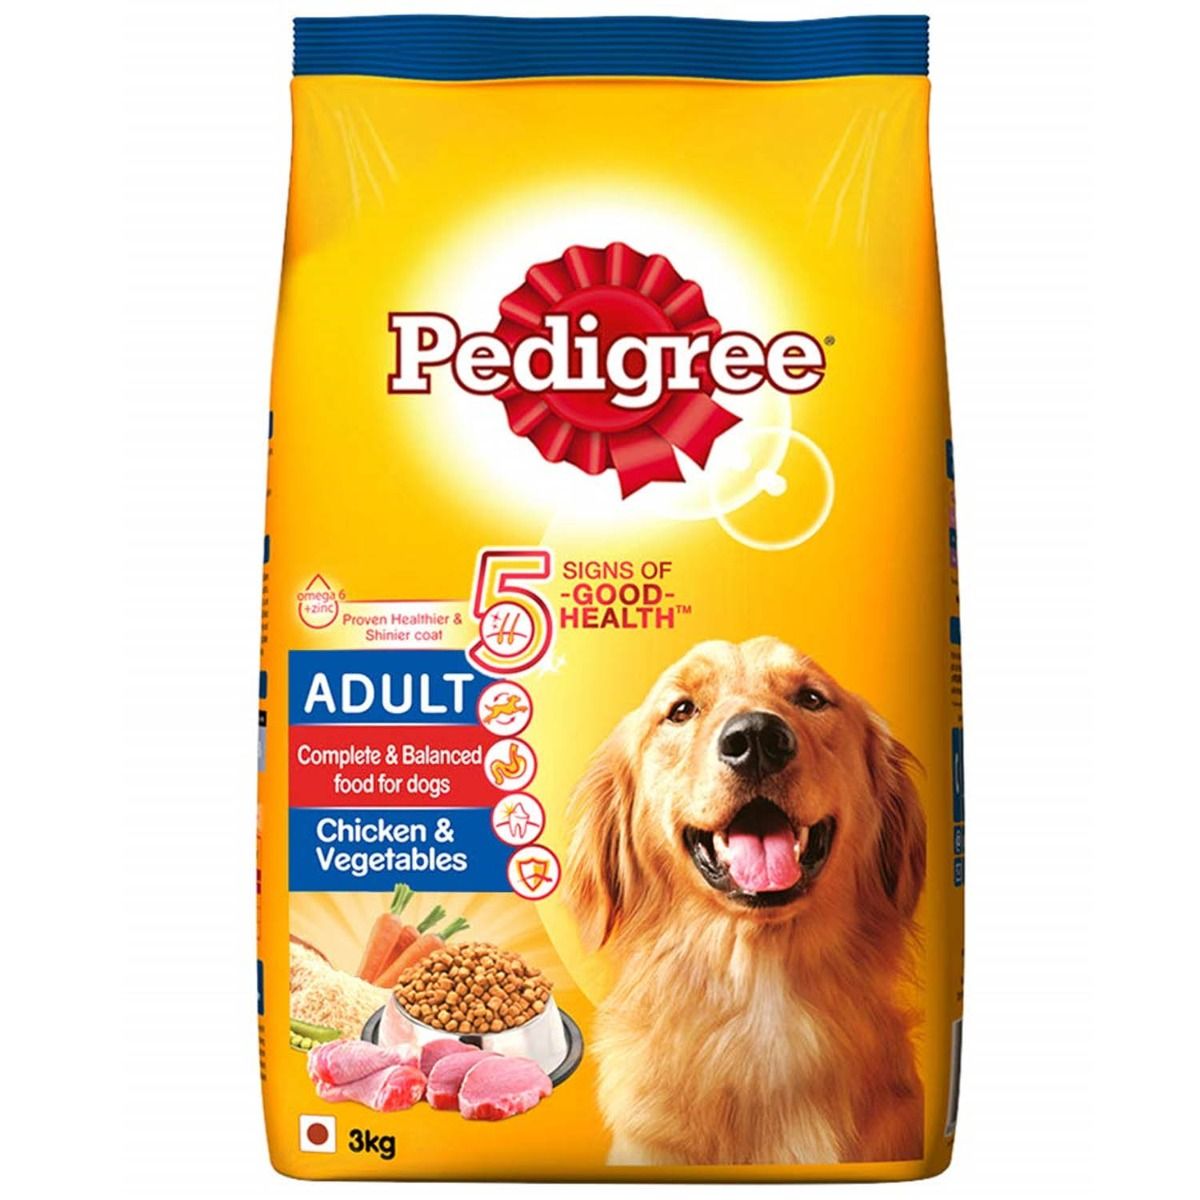 Buy Pedigree Chicken & Vegetables Adult Dog Food, 3 kg Online